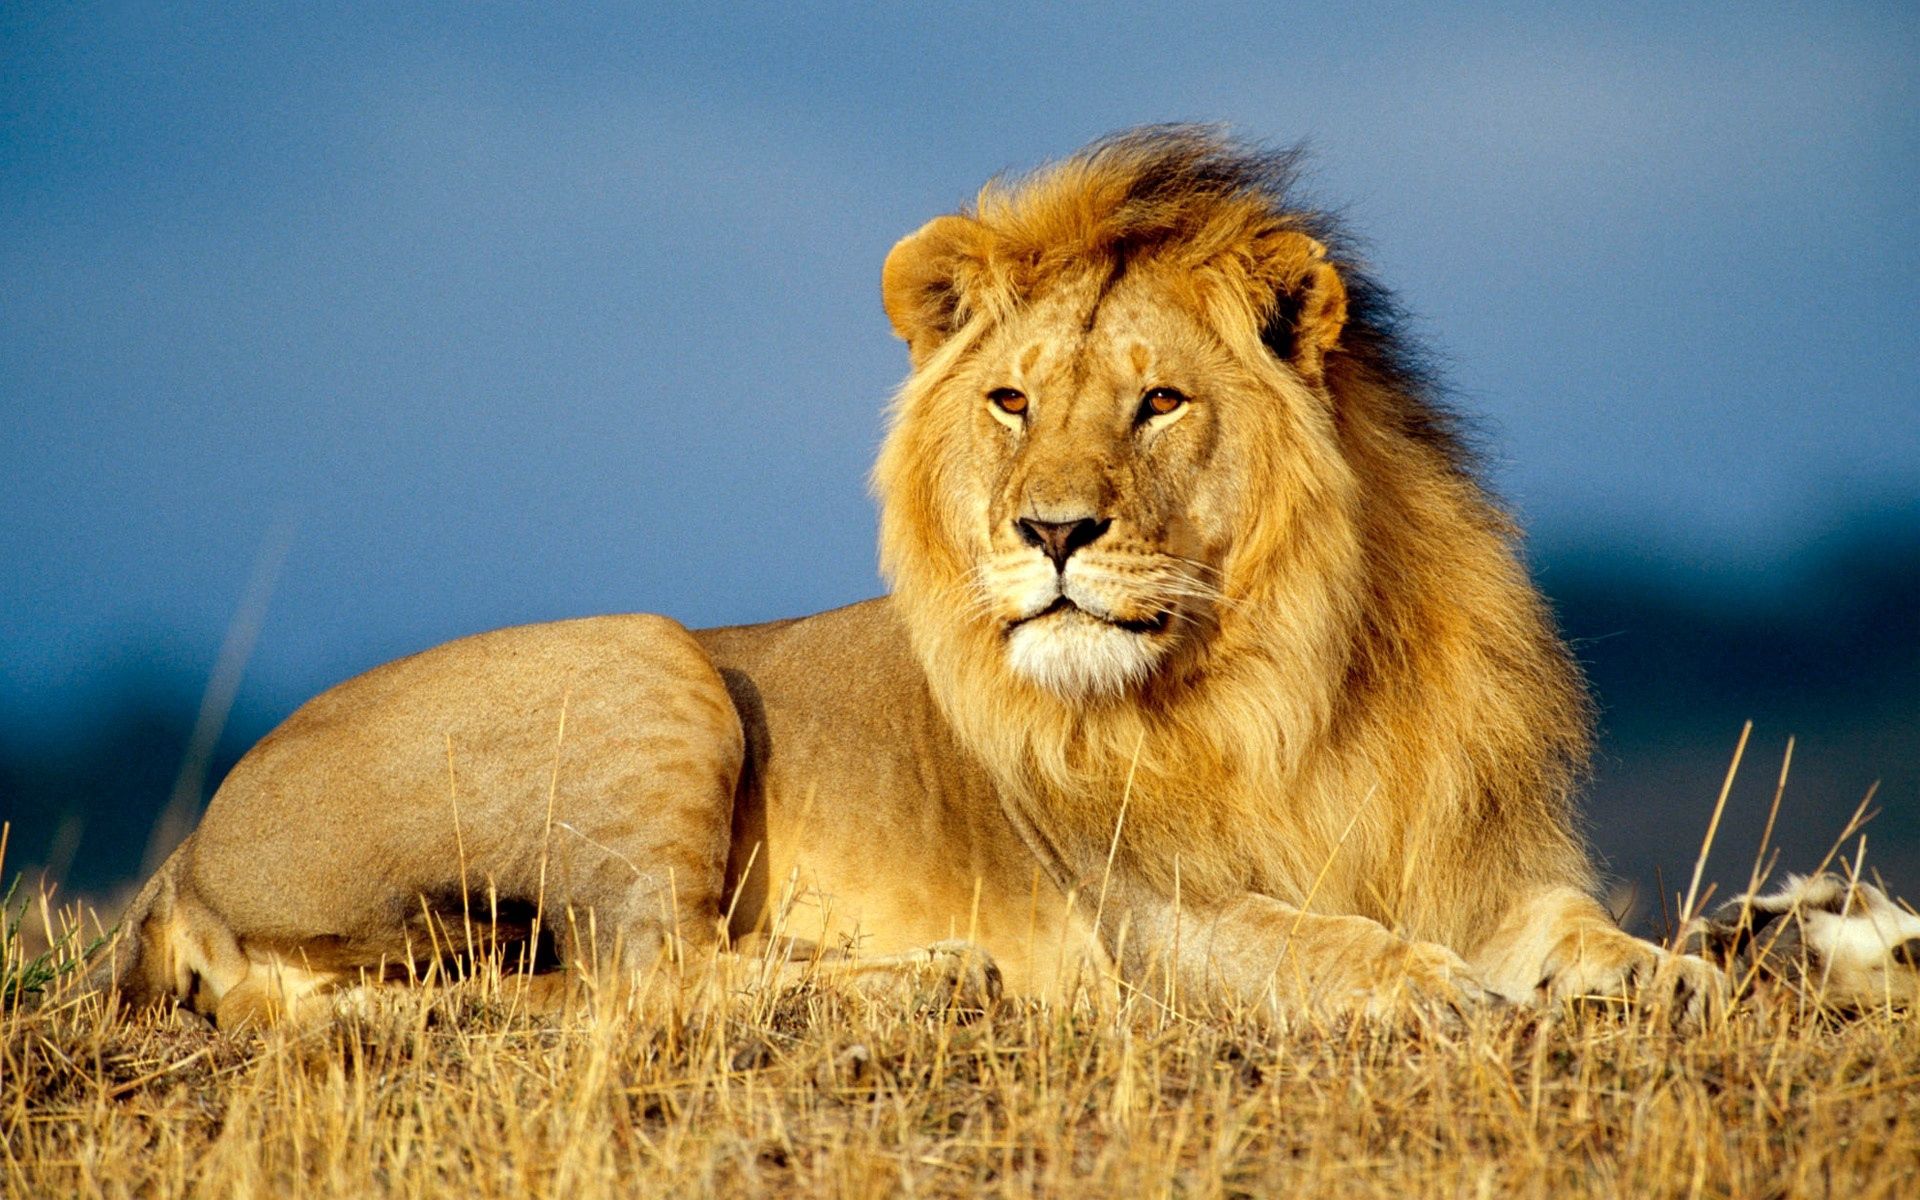 96819 descargar imagen león, animales, tumbarse, mentir, un leon, visión, opinión, melena, rey de las bestias: fondos de pantalla y protectores de pantalla gratis